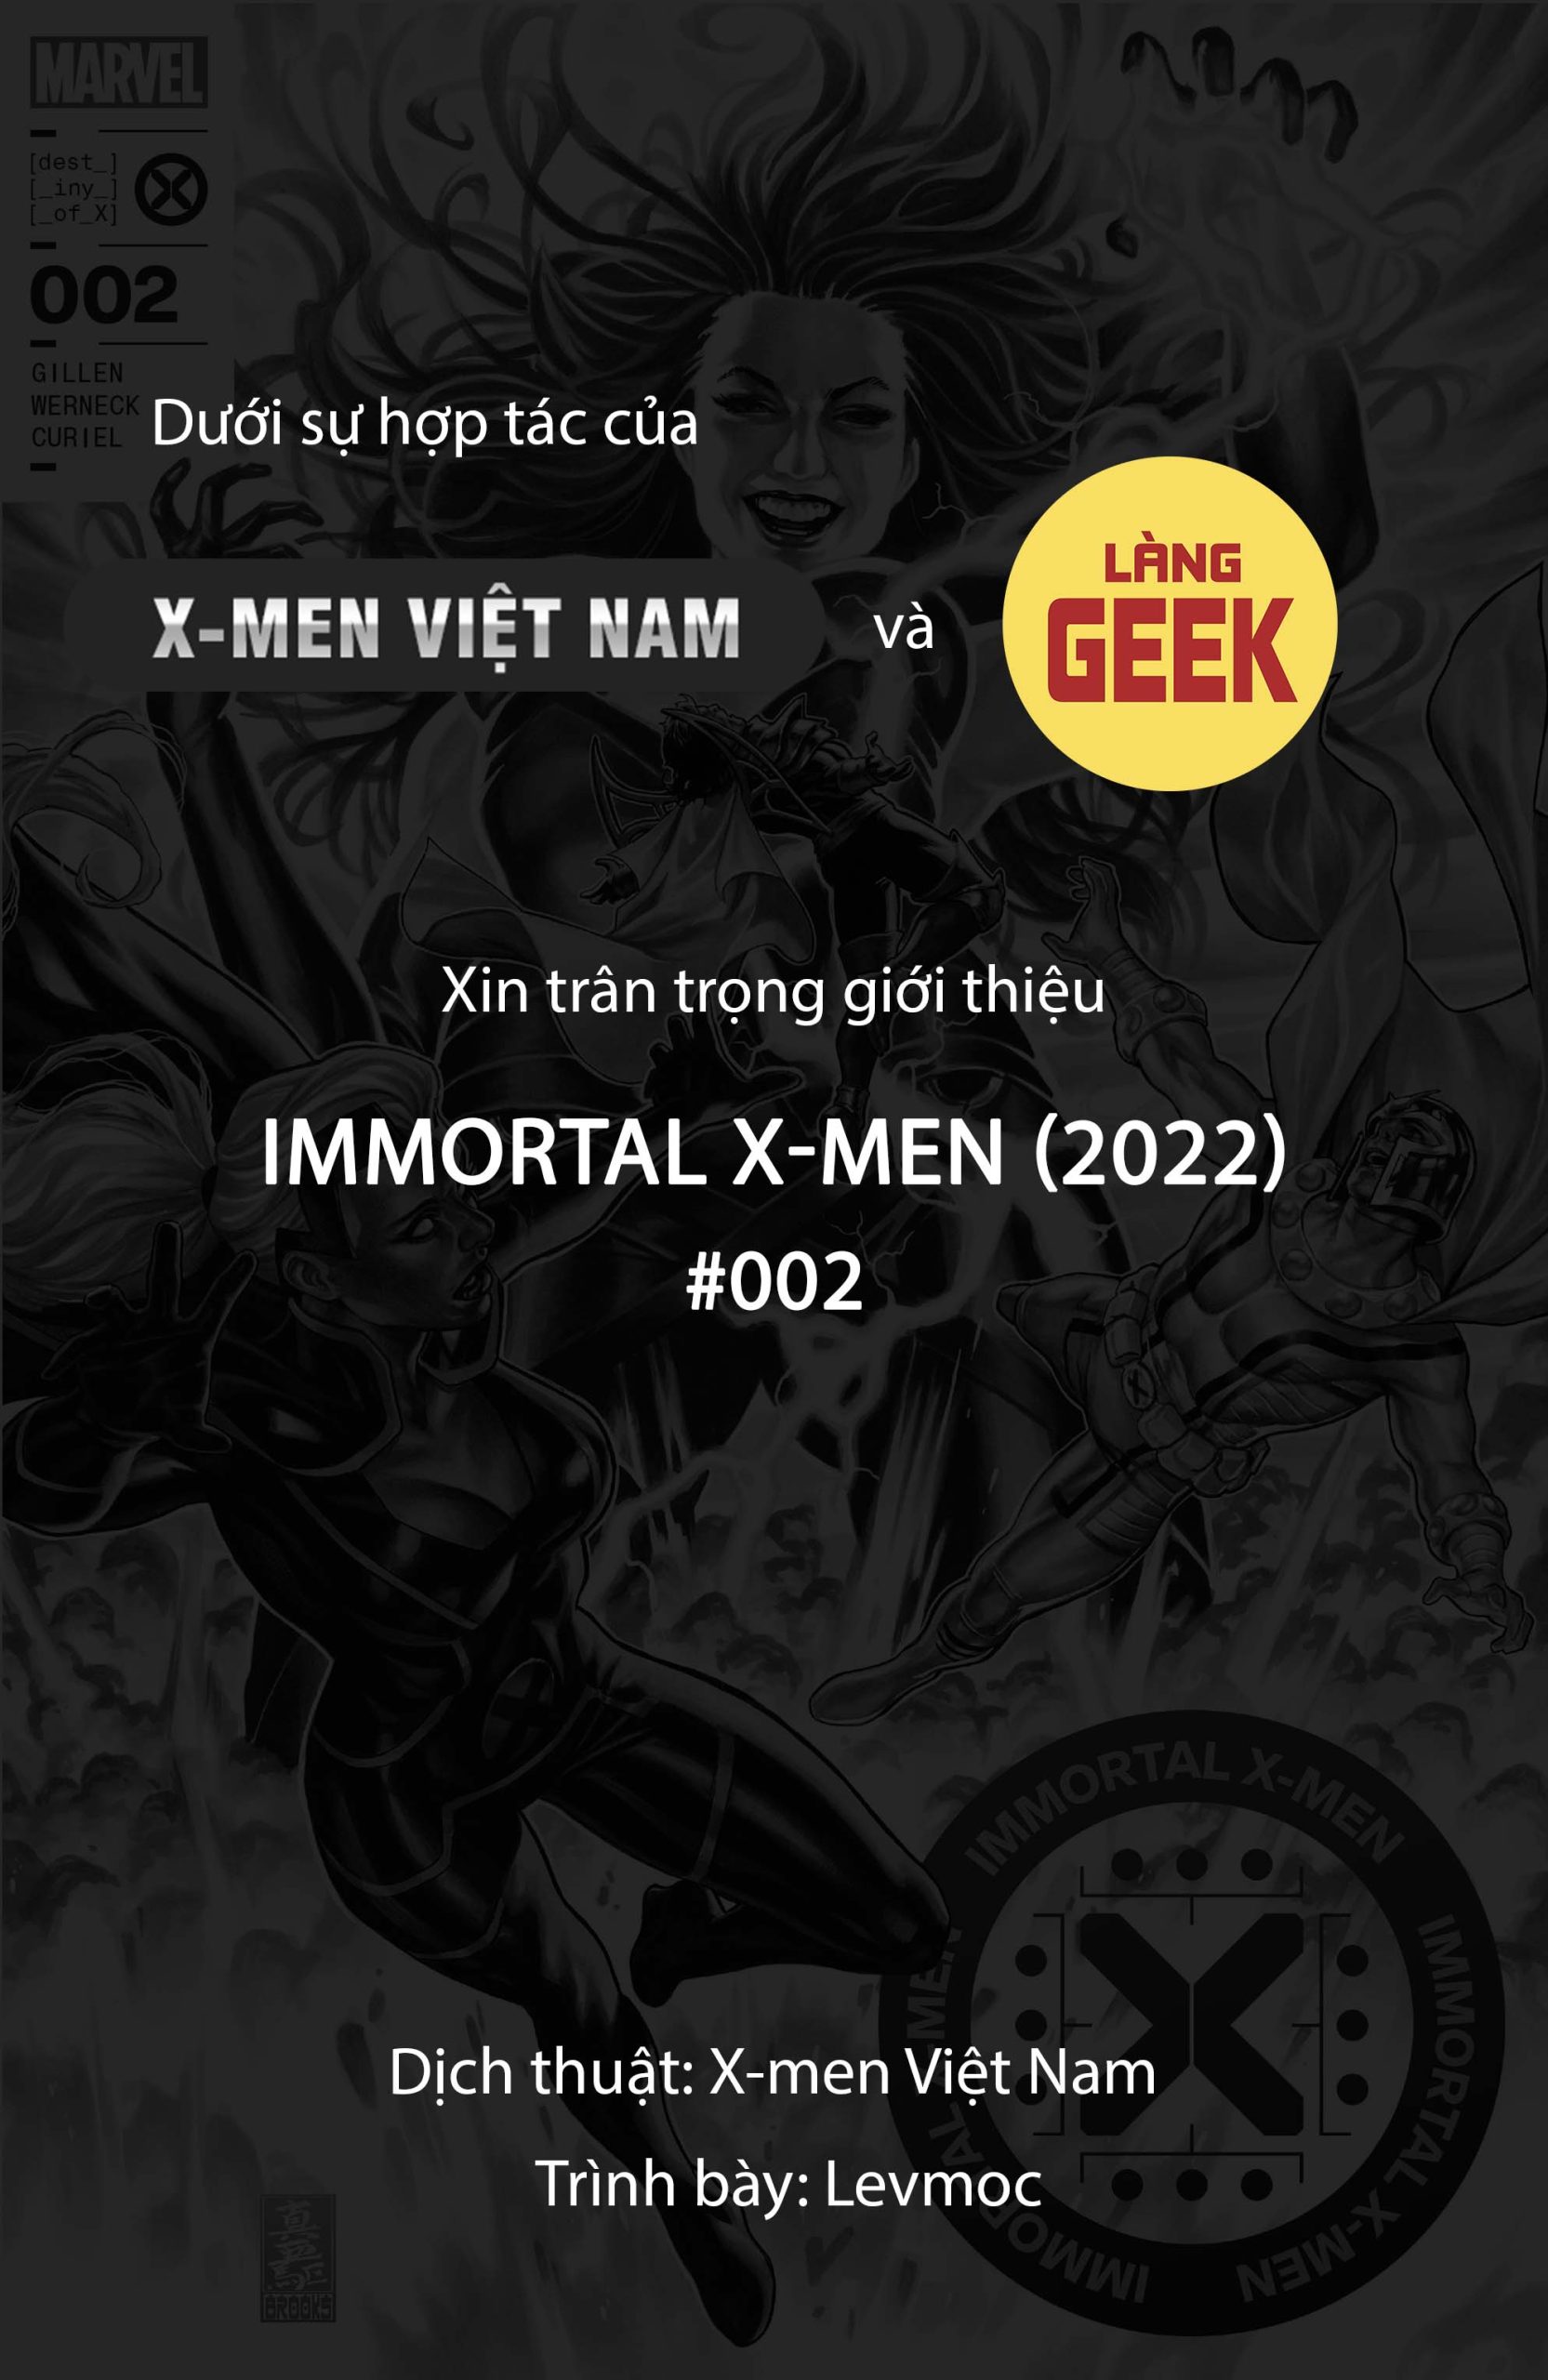 https://langgeek.net/wp-content/webpc-passthru.php?src=https://langgeek.net/wp-content/uploads/2022/05/Immortal-X-Men-2022-002-000-1-scaled.jpg&nocache=1